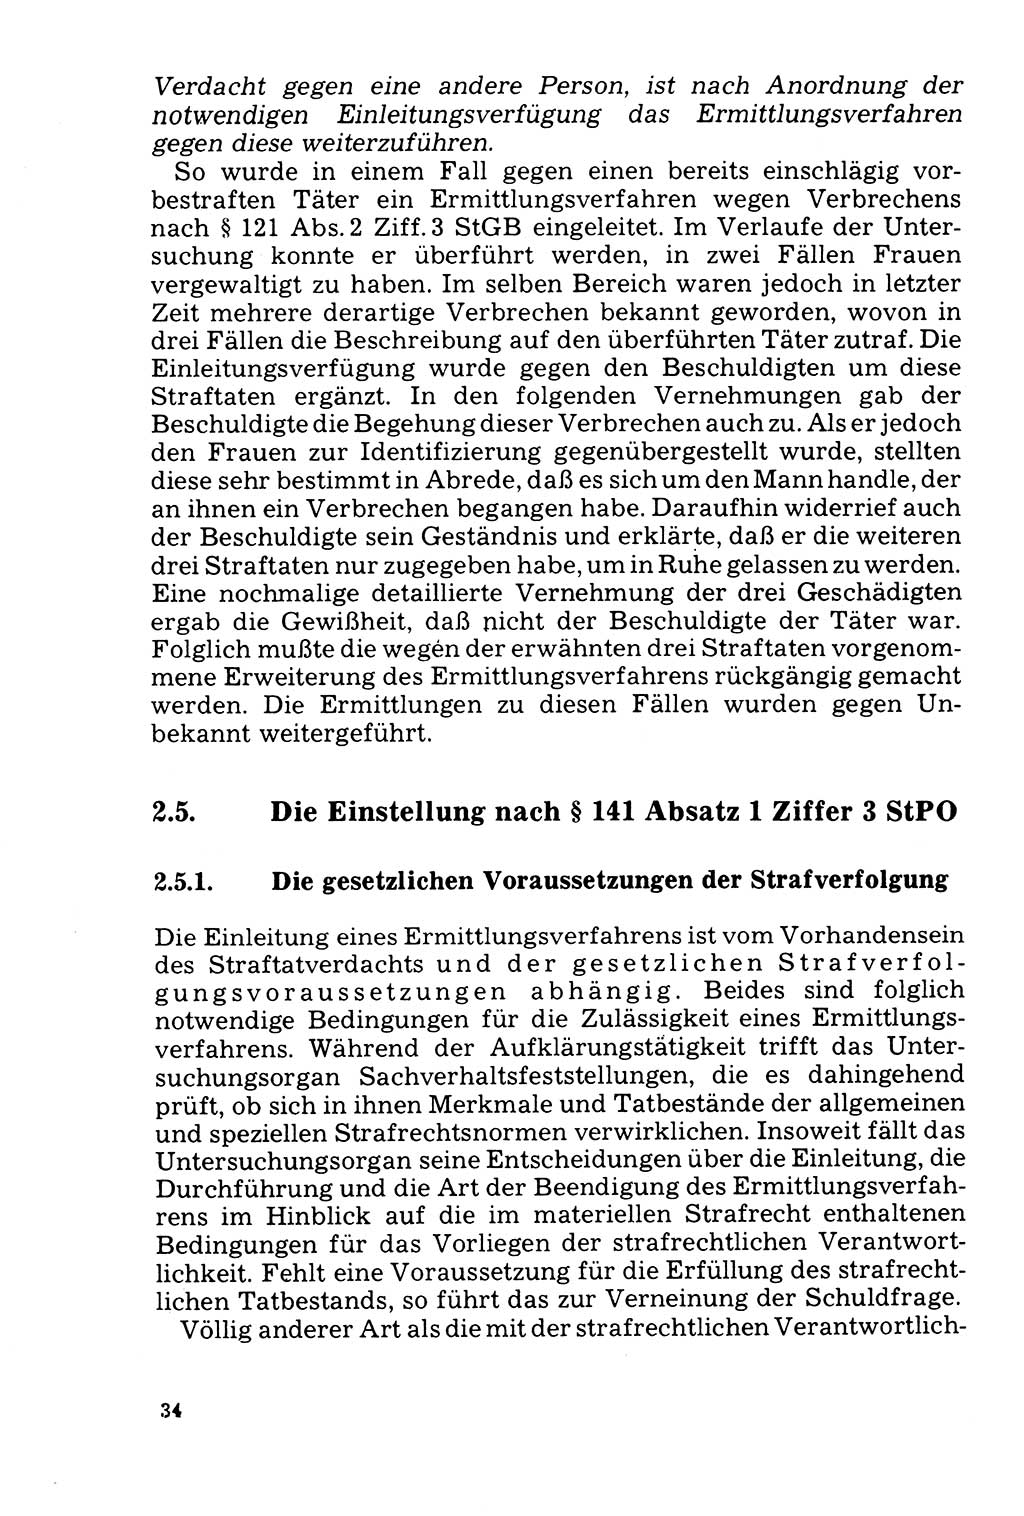 Der Abschluß des Ermittlungsverfahrens [Deutsche Demokratische Republik (DDR)] 1978, Seite 34 (Abschl. EV DDR 1978, S. 34)